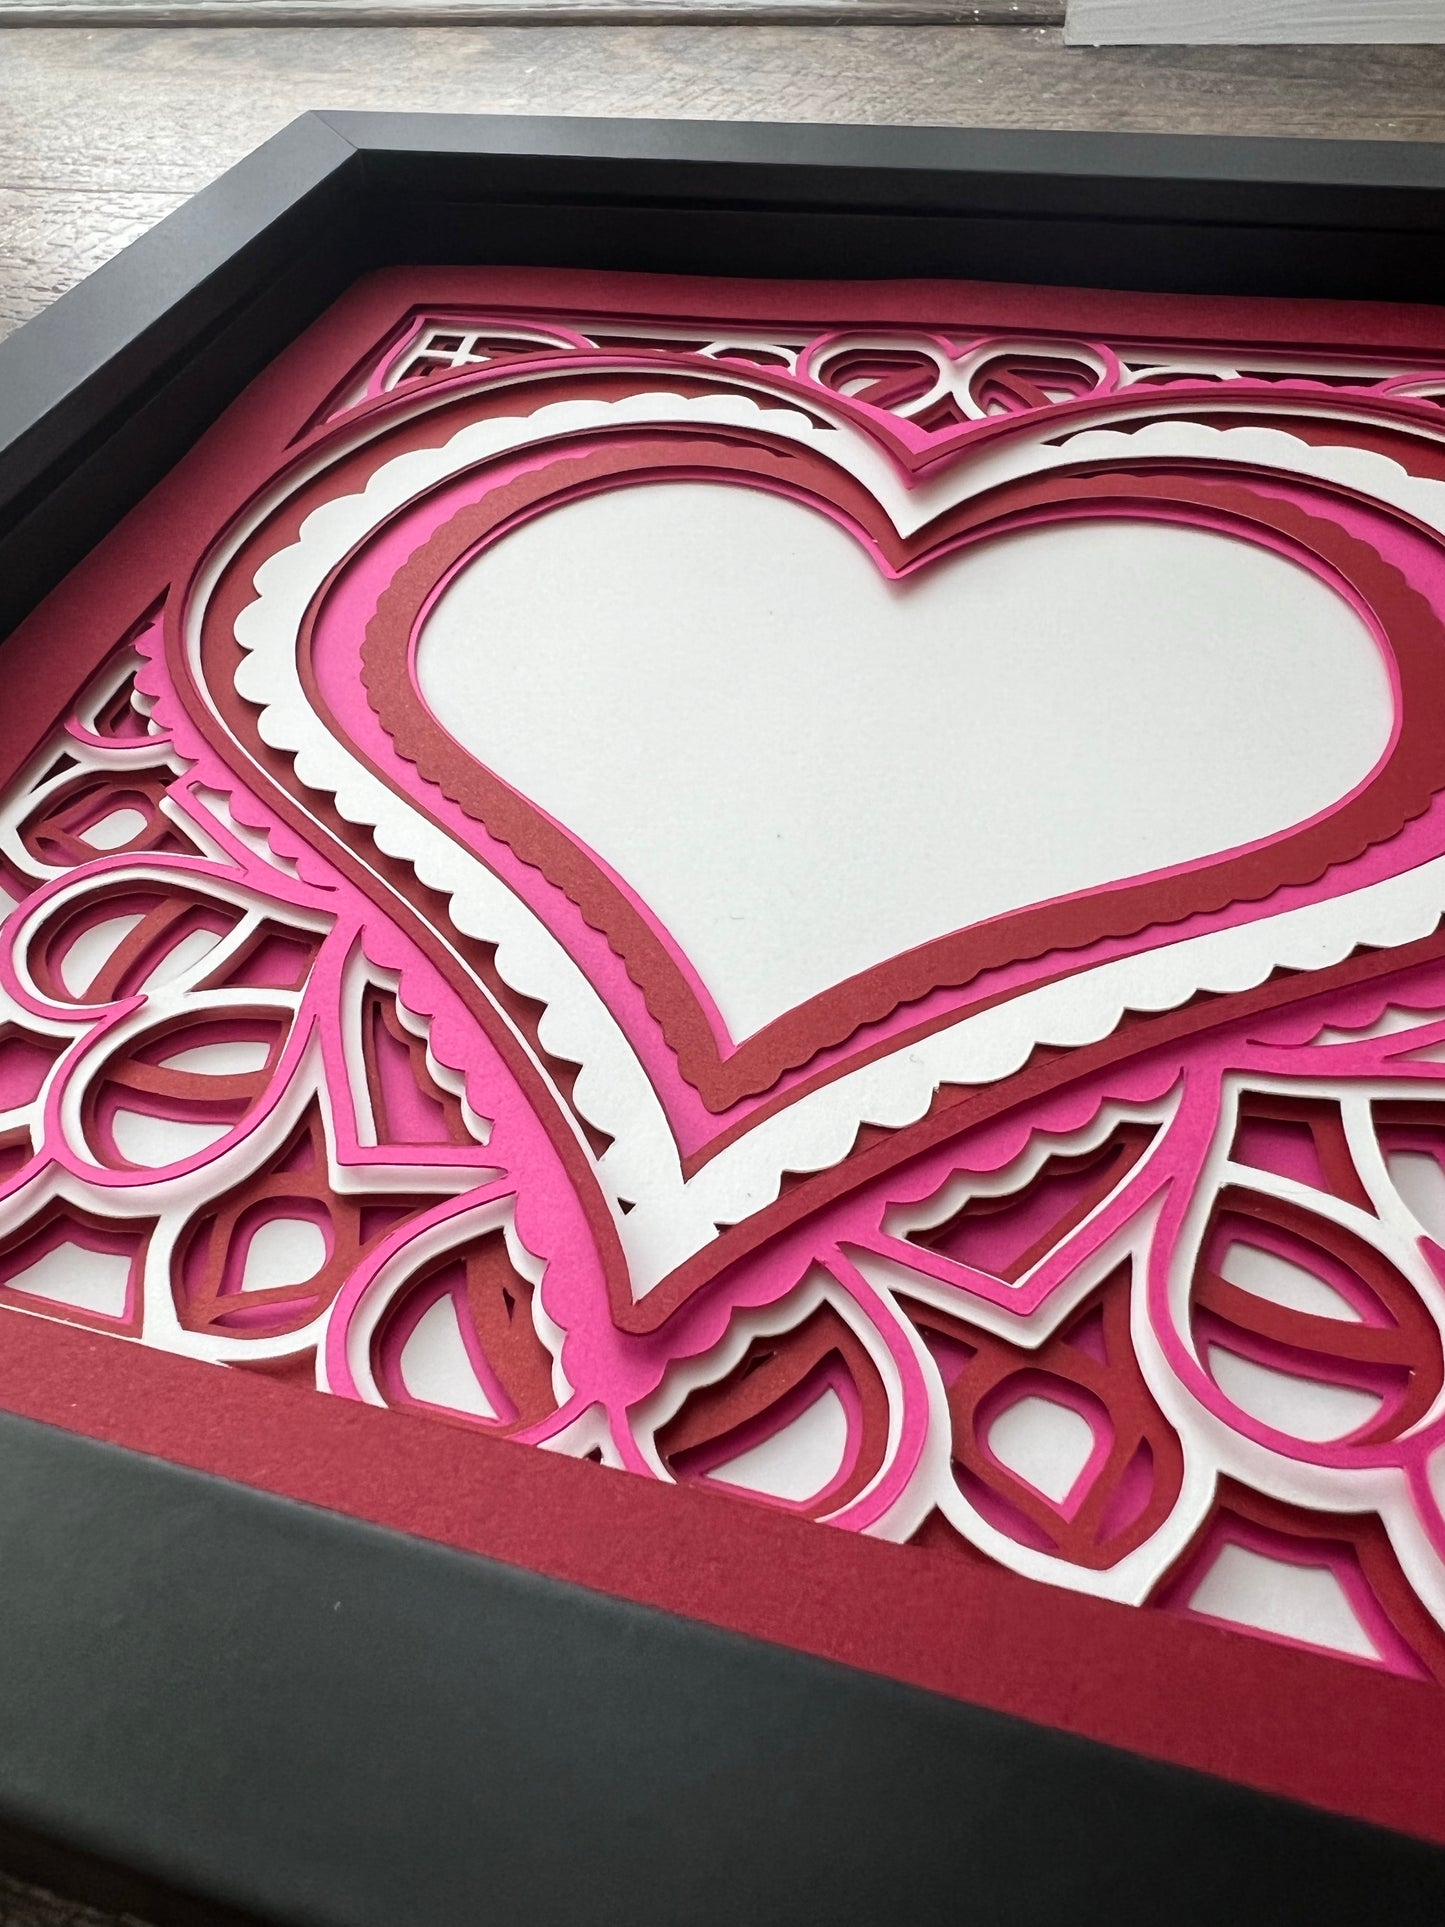 Heart photo 3D paper art shadowbox